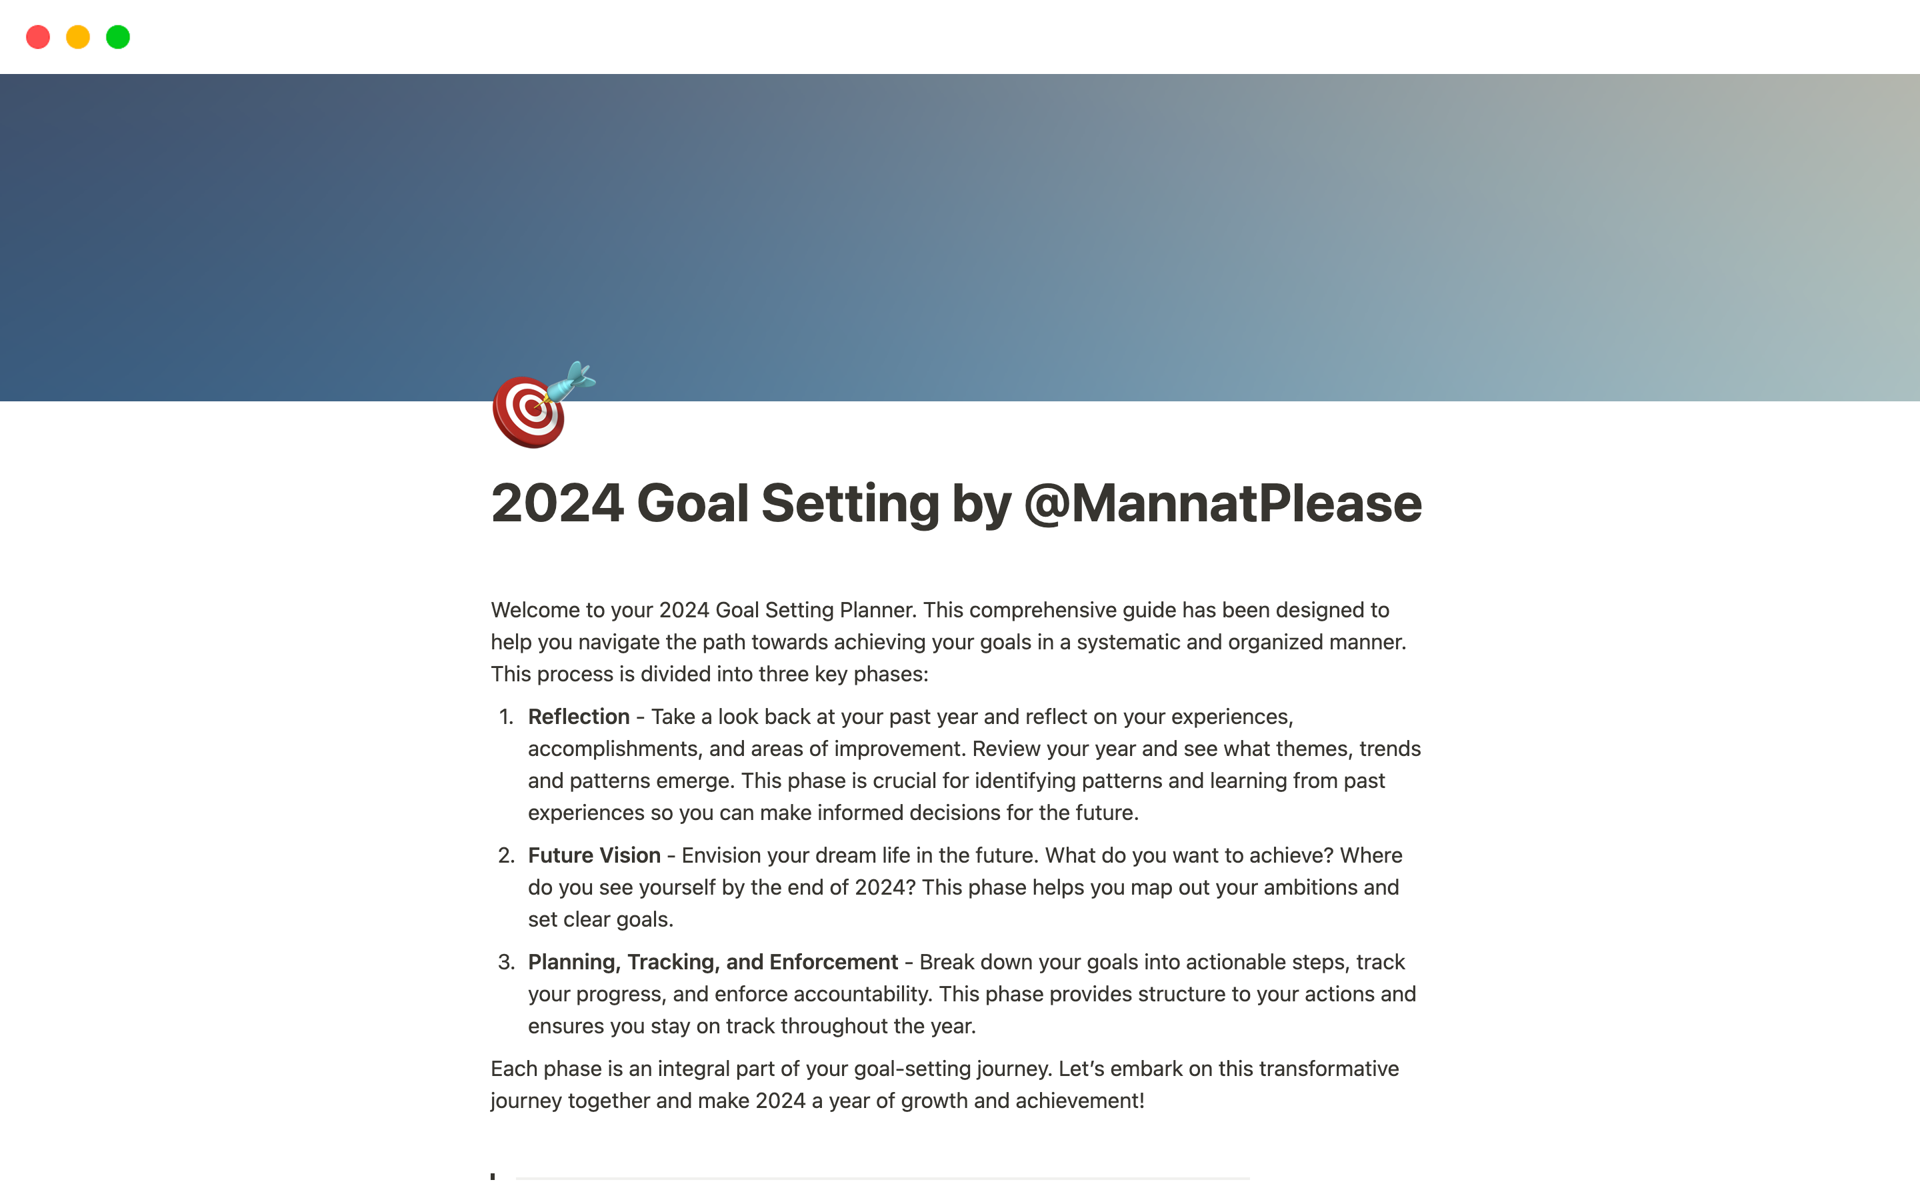 Vista previa de una plantilla para 2024 Goal Setting